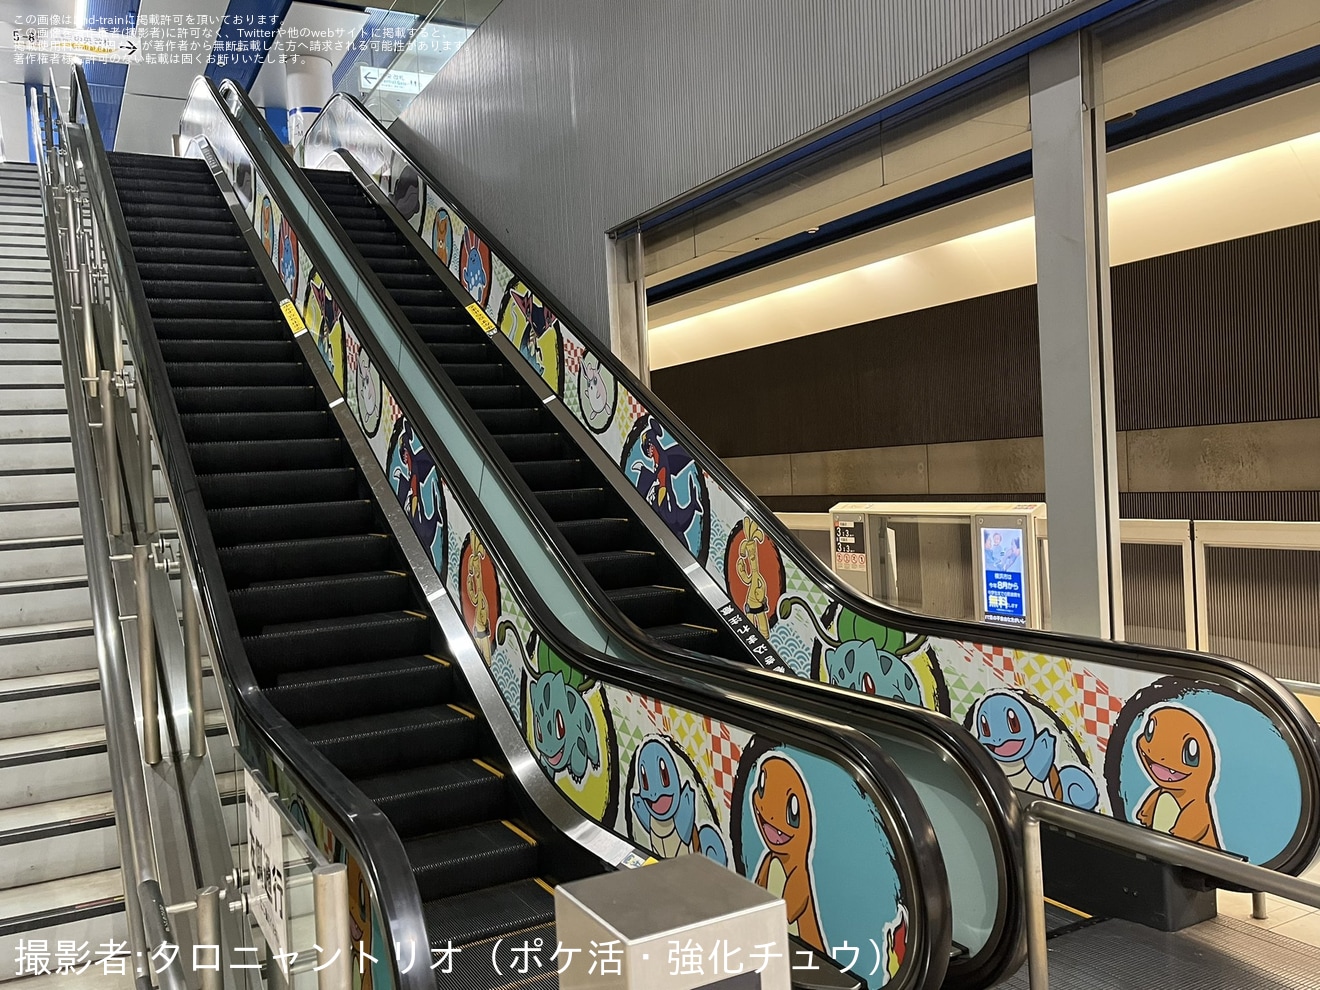 【横高】「ポケモンバトル世界大会開催記念」でみなとみらい駅を大会オフィシャルアートにて装飾の拡大写真